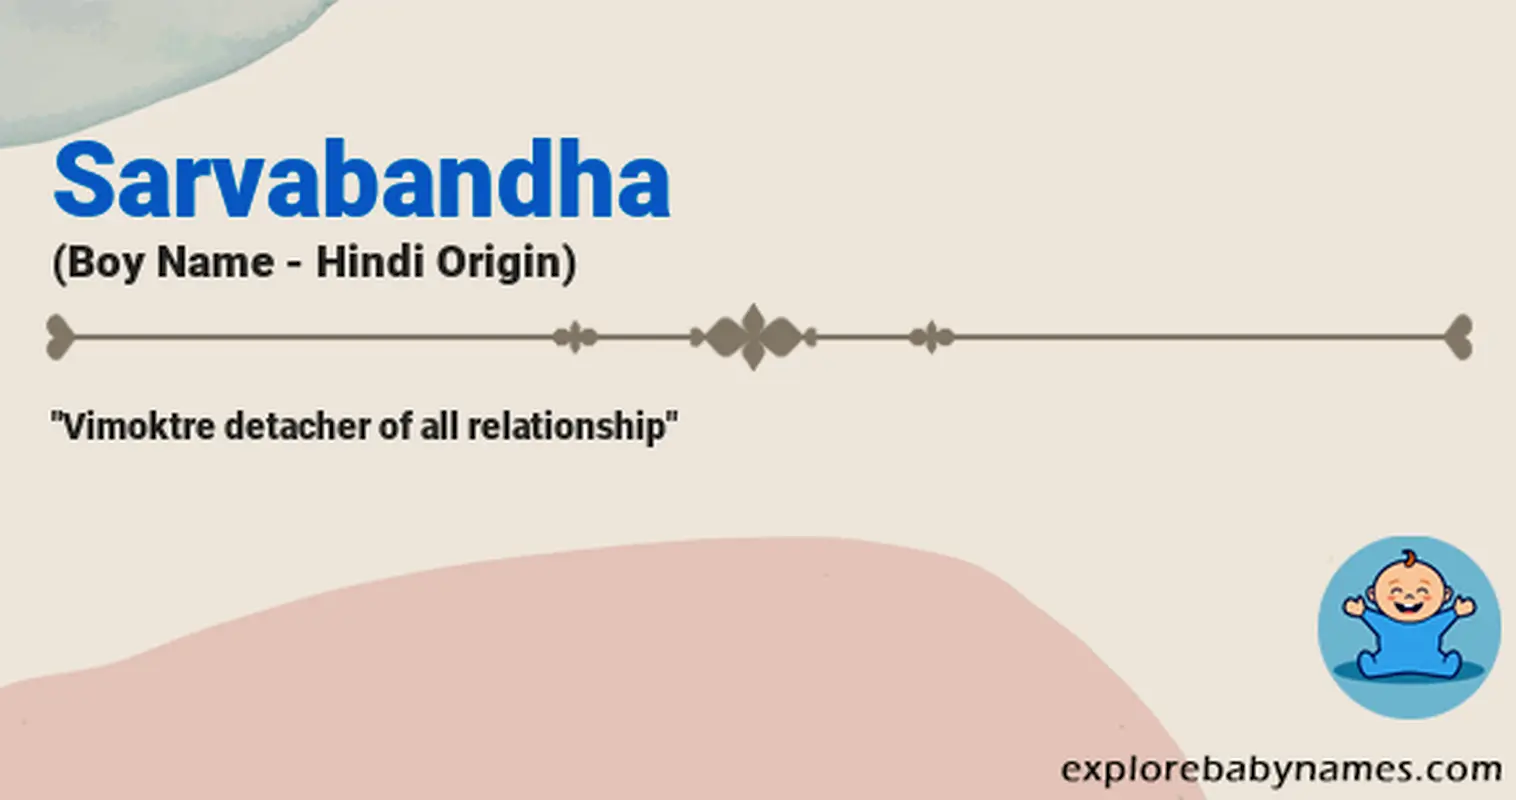 Meaning of Sarvabandha